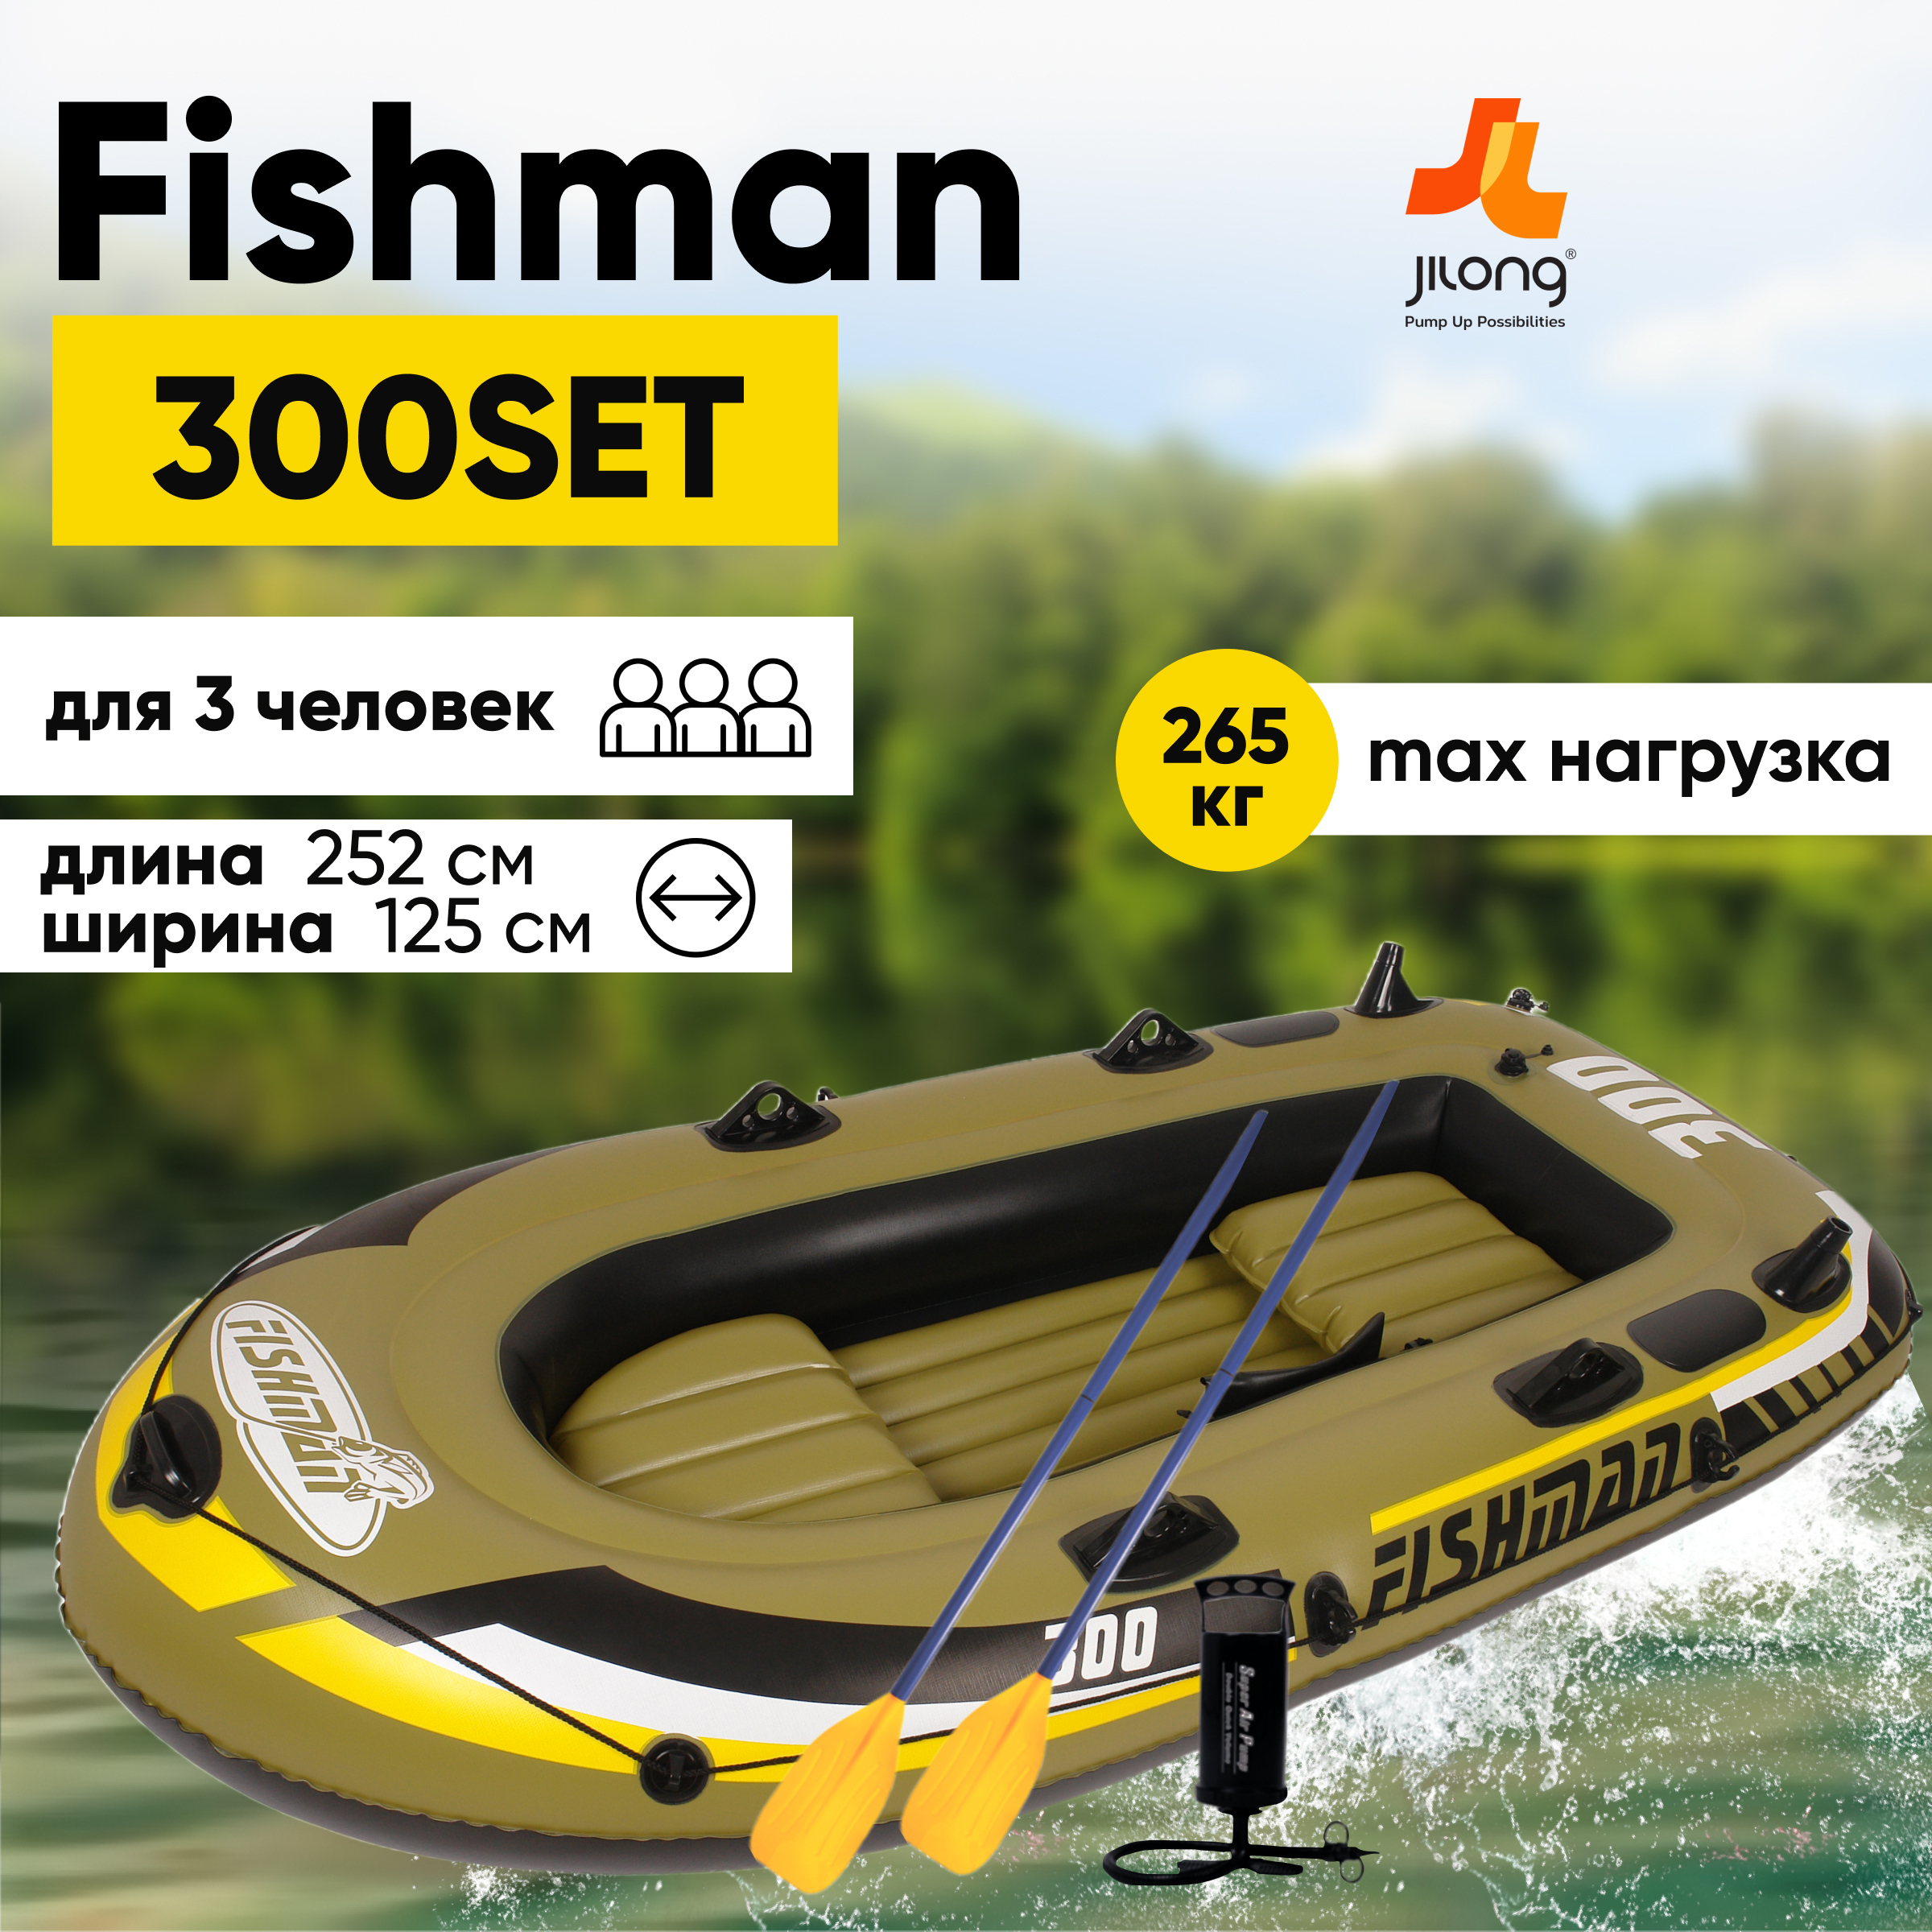 Лодка надувная Jilong 07208-1 Fishman 300SET, 252х125х40 см в Москве –купить по низкой цене в интернет-магазине Леруа Мерлен